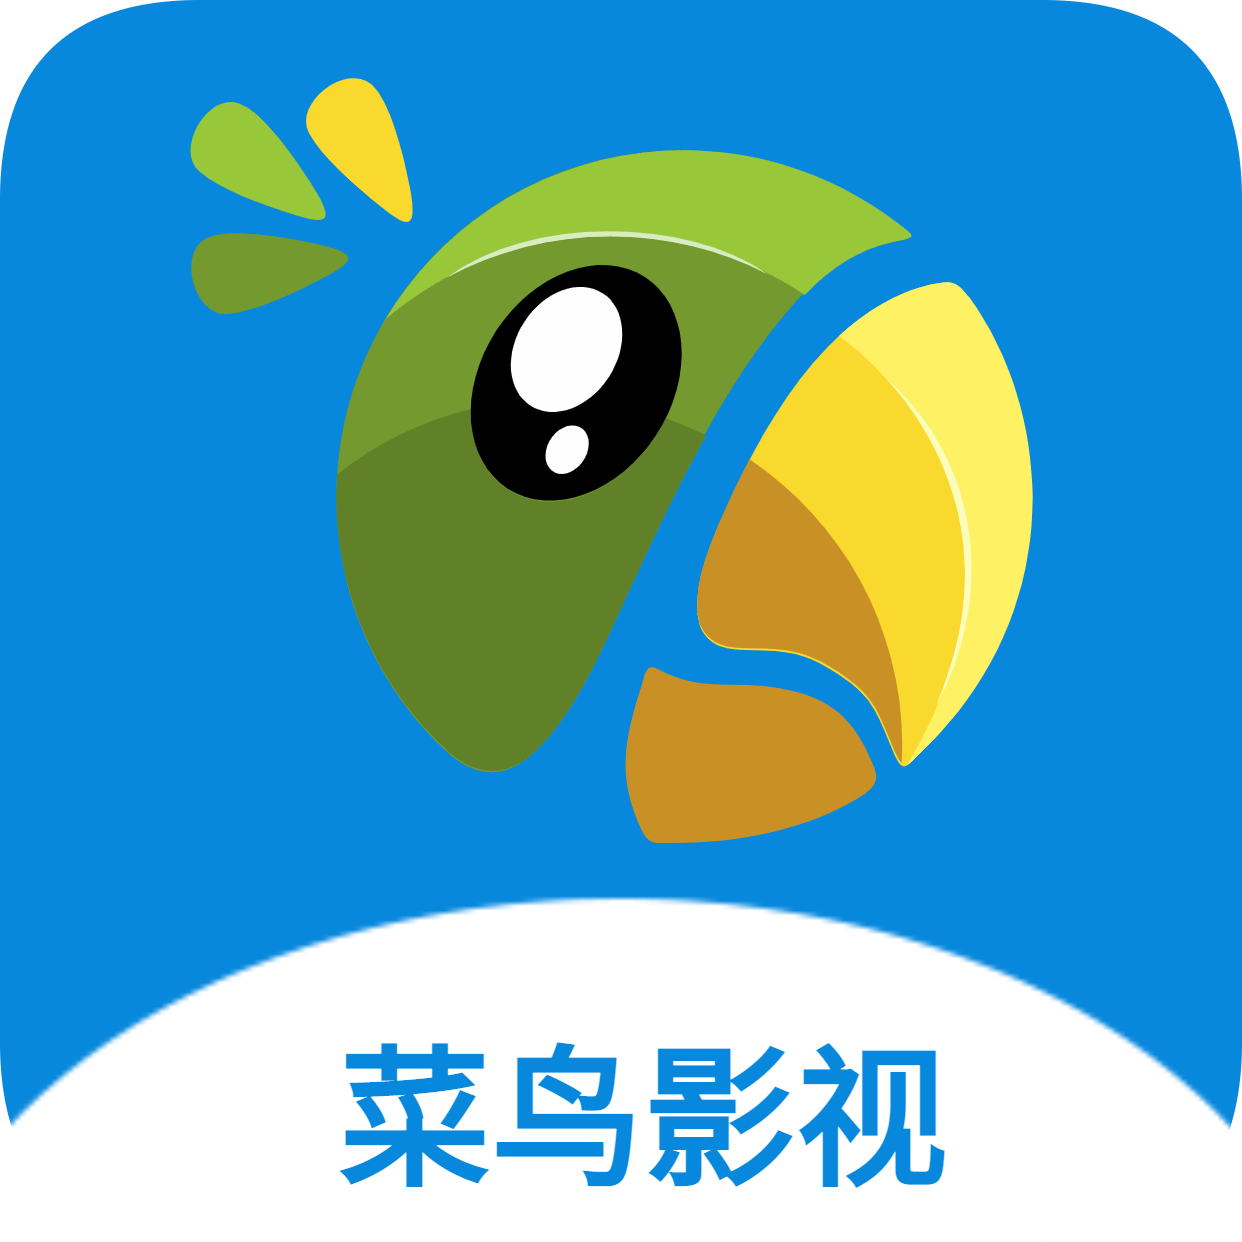 菜鸟影视TV版App 1.7 最新版